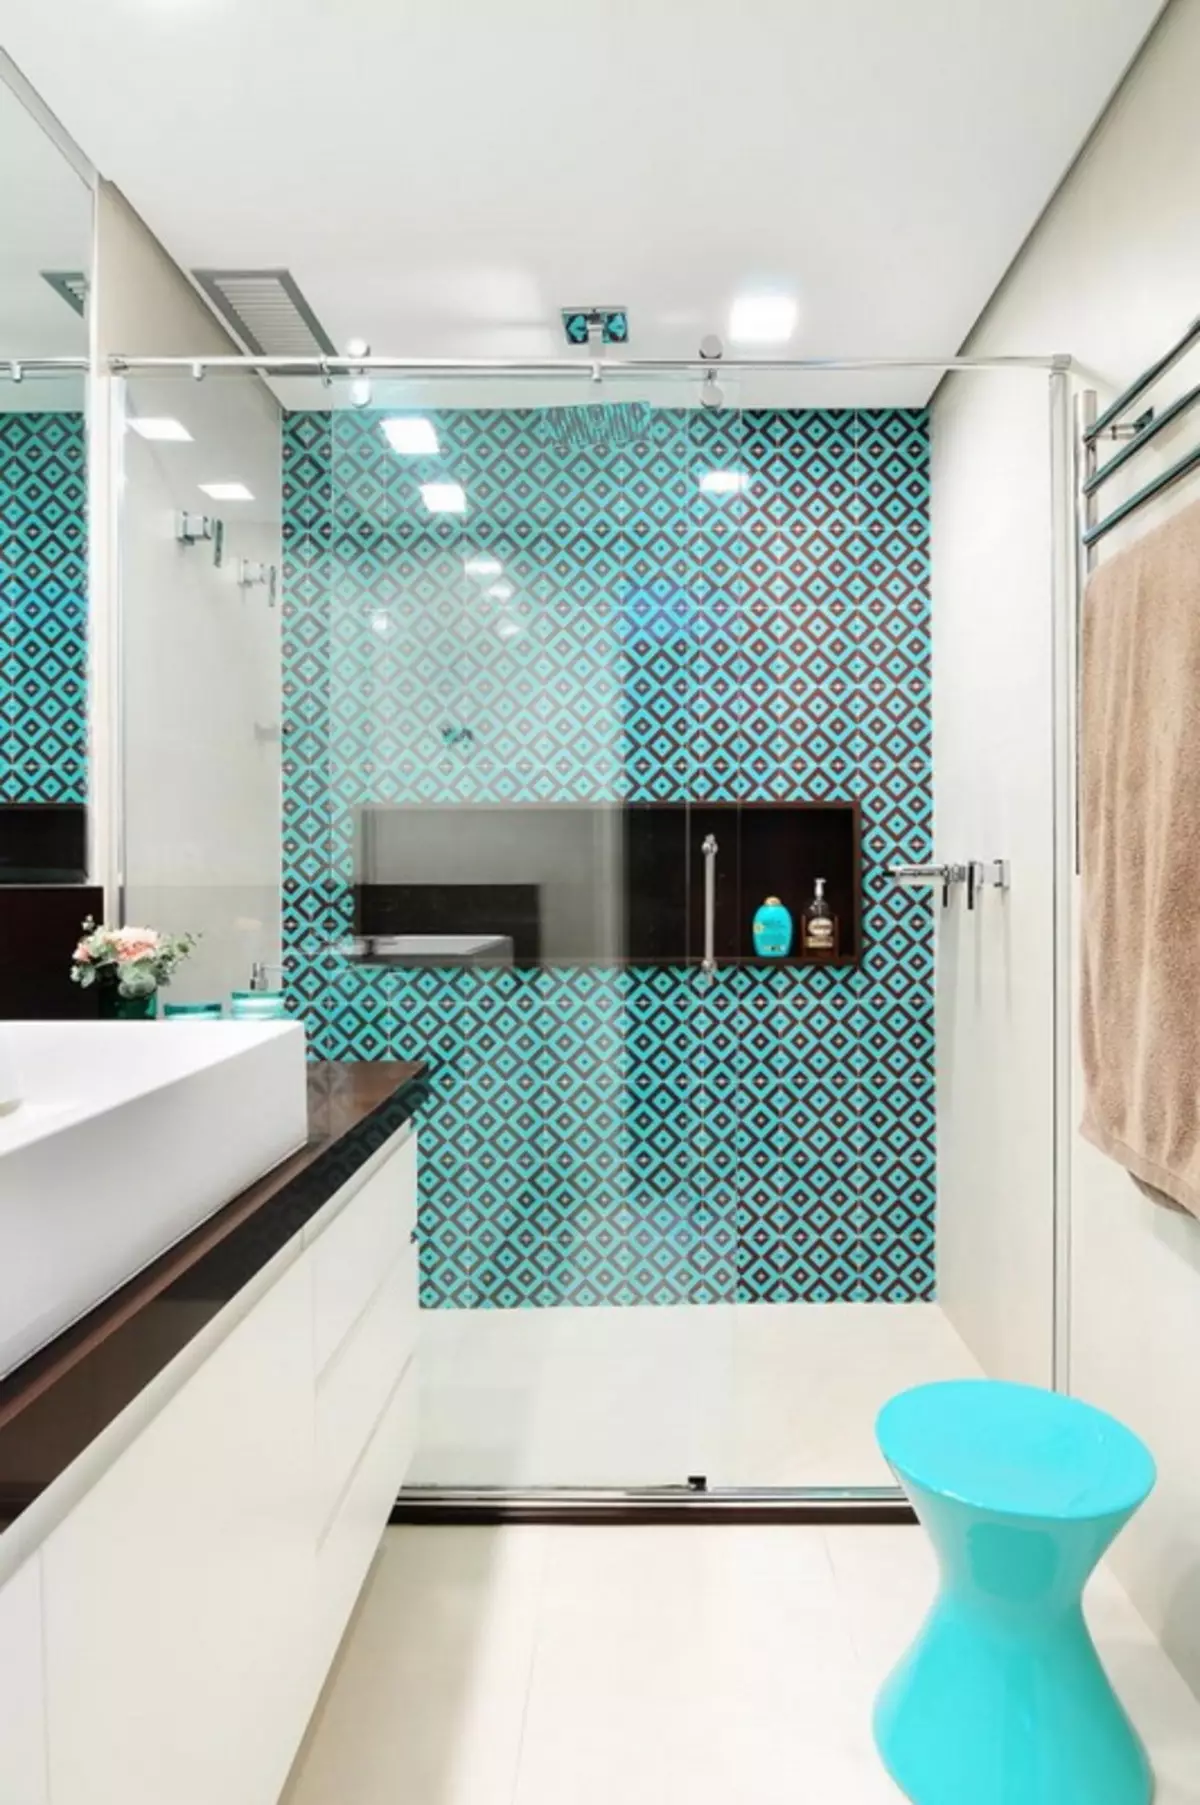 Baño turquesa (61 fotos): Ejemplos de diseño de baño en este color. Entendemos en colores, creamos un hermoso interior. 10203_6